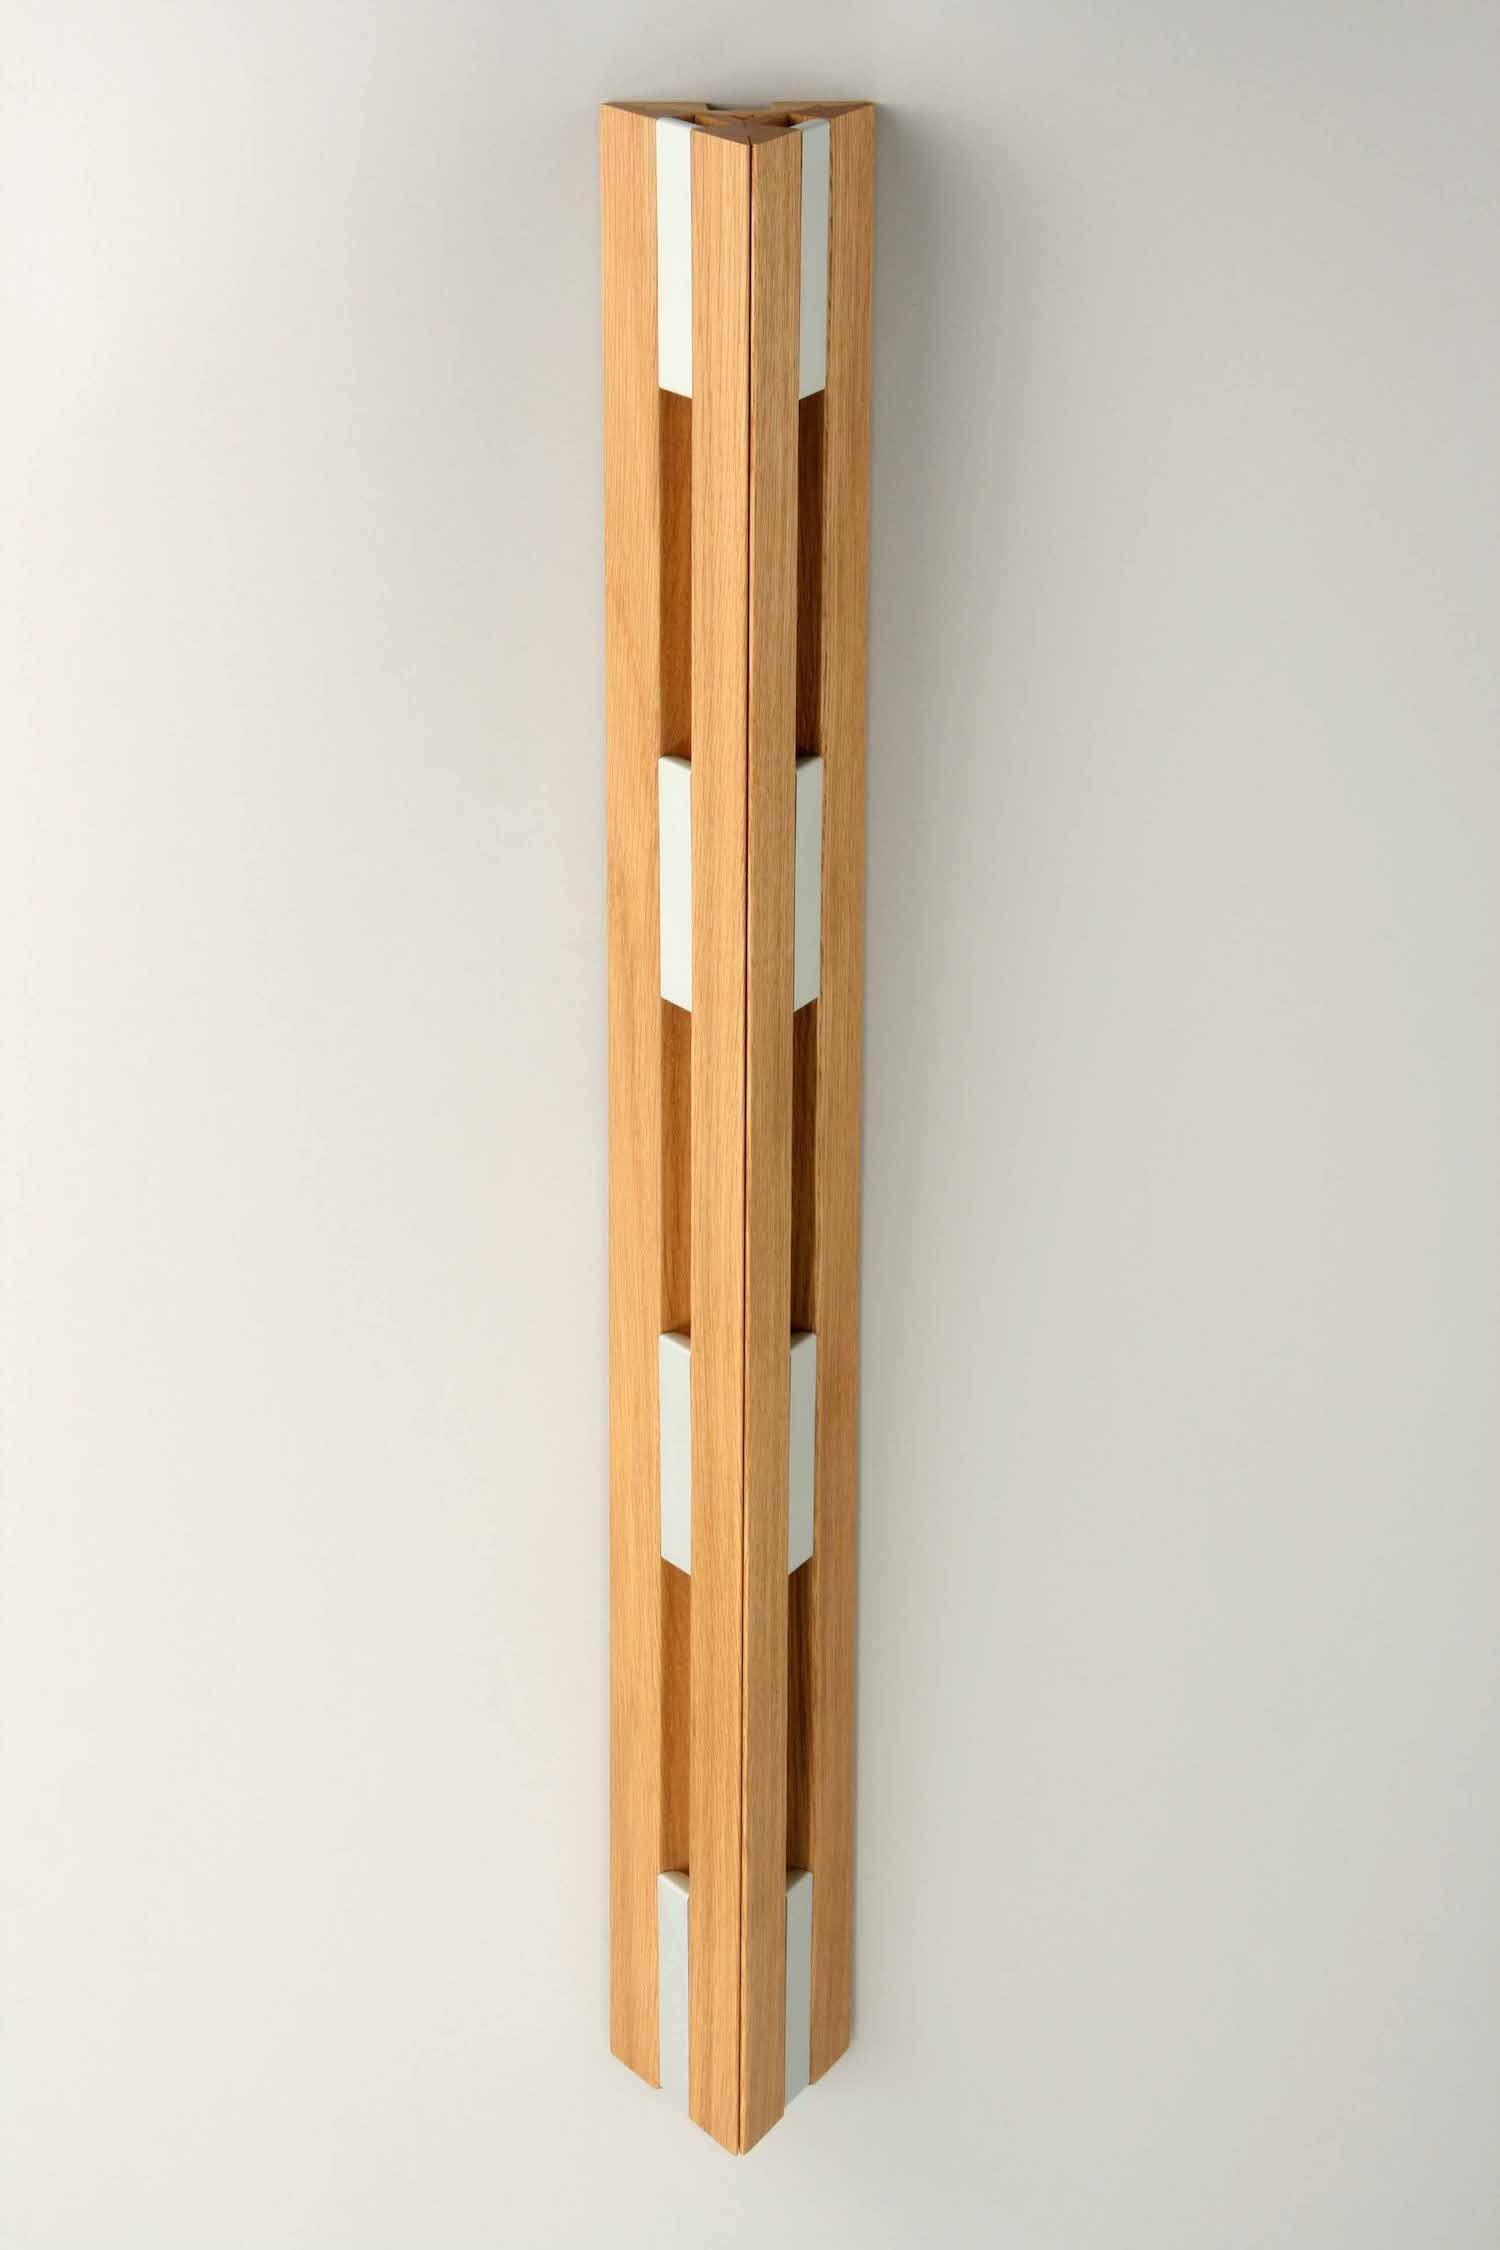 Porte-manteau vertical à fixation murale. 8 crochets en métal. Design moderne en bois